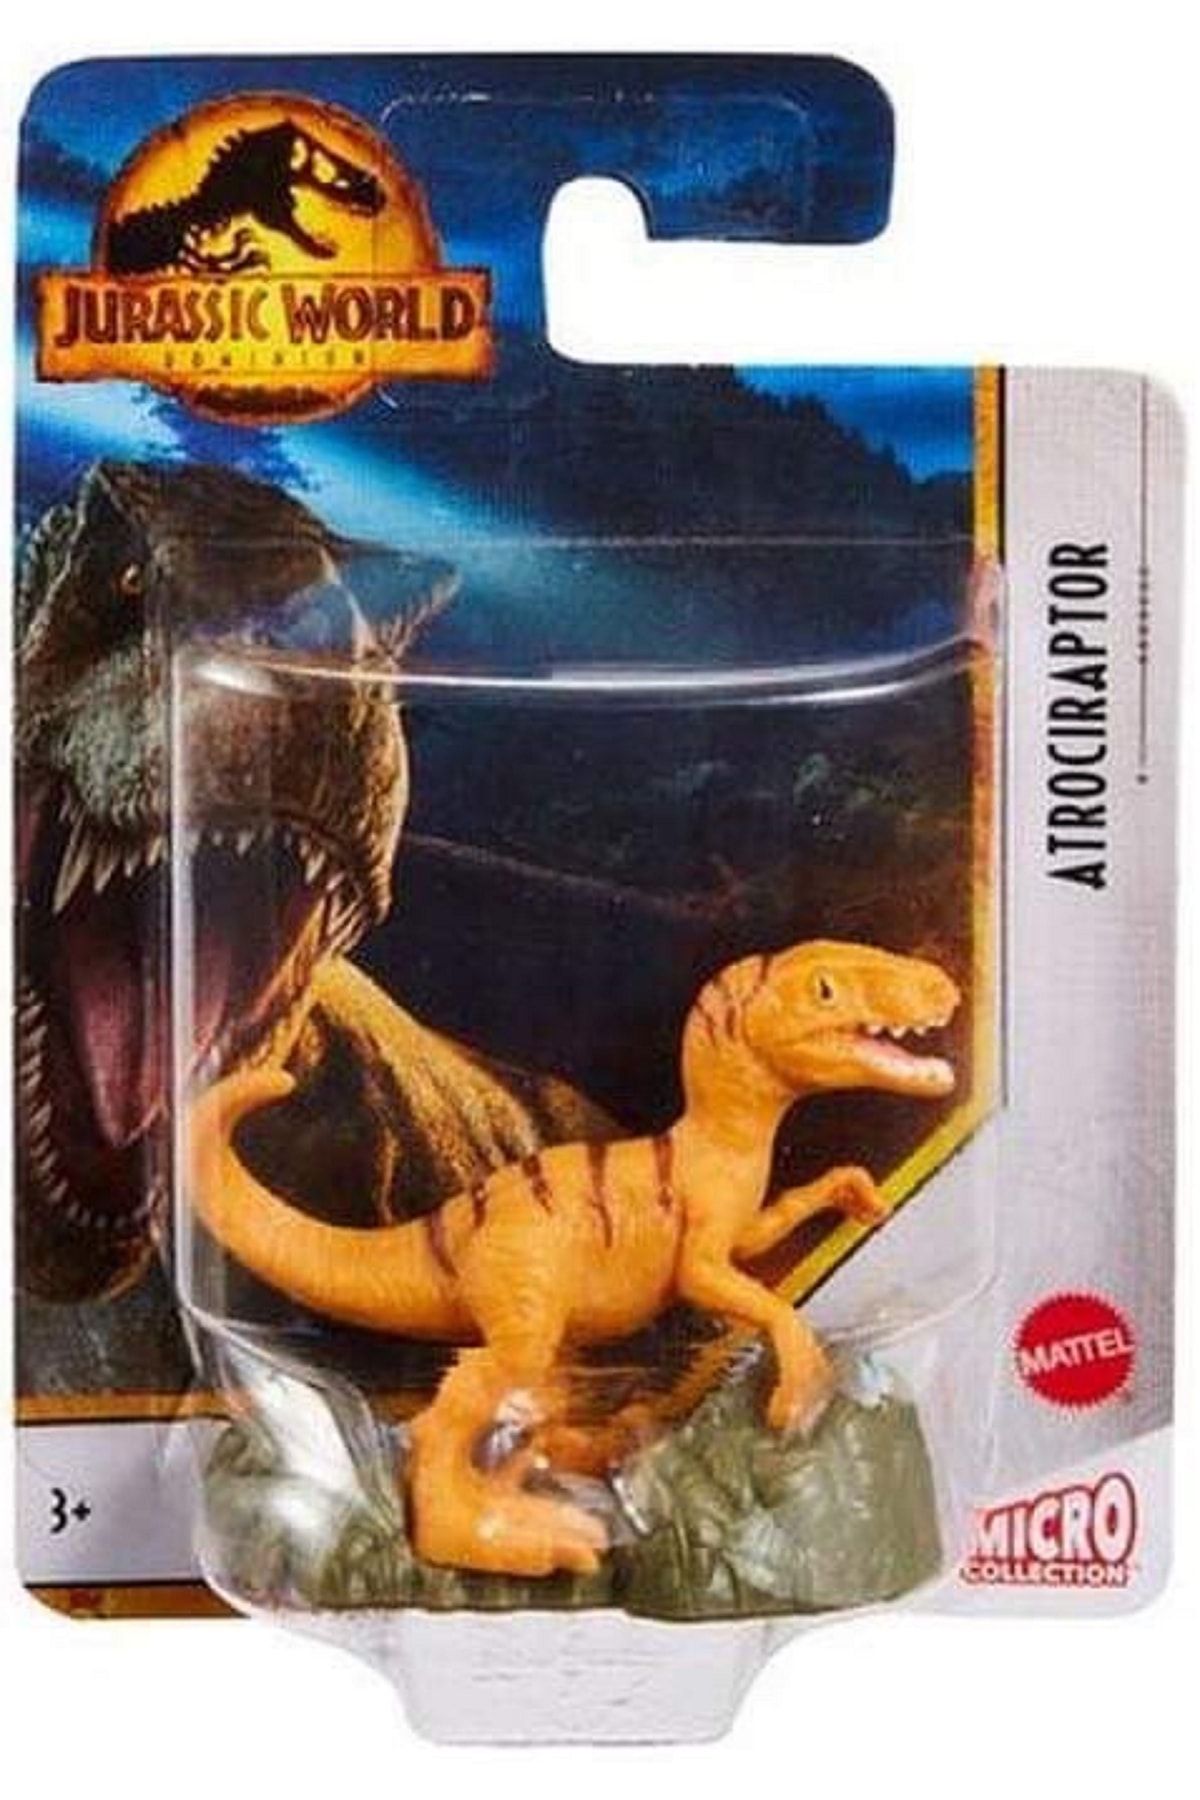 Jurassic World Lisanslı Micro Boyut Dinazor Figürü Oyuncak Figür Oyuncağı Orjinal 5cm